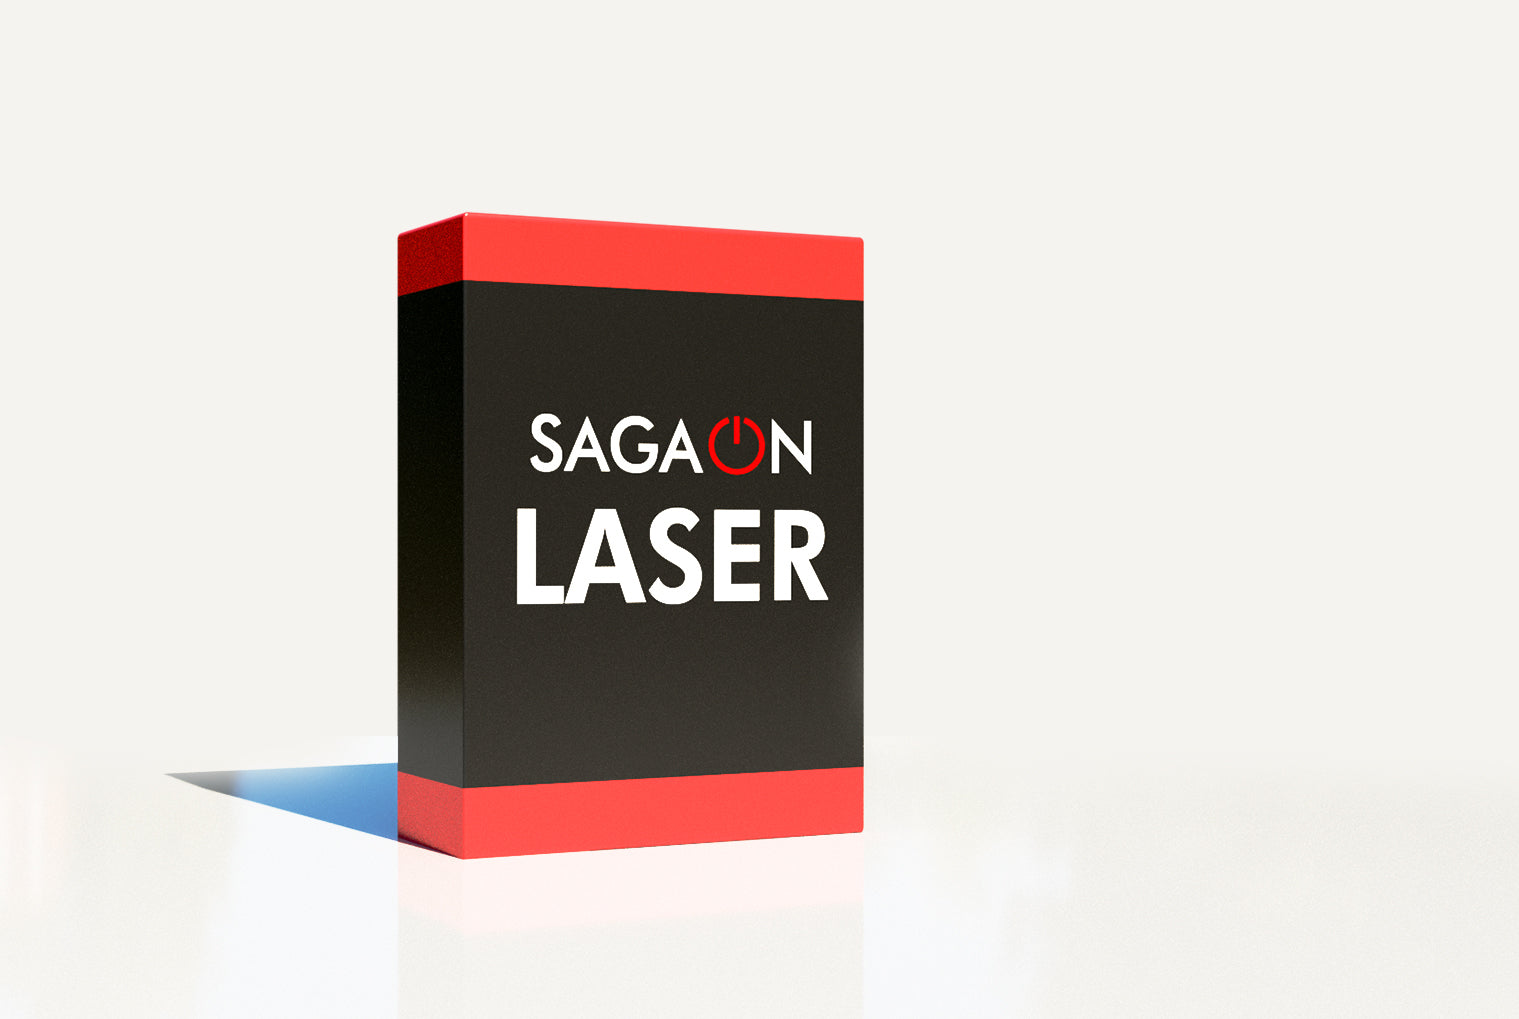 Sagaon Laser